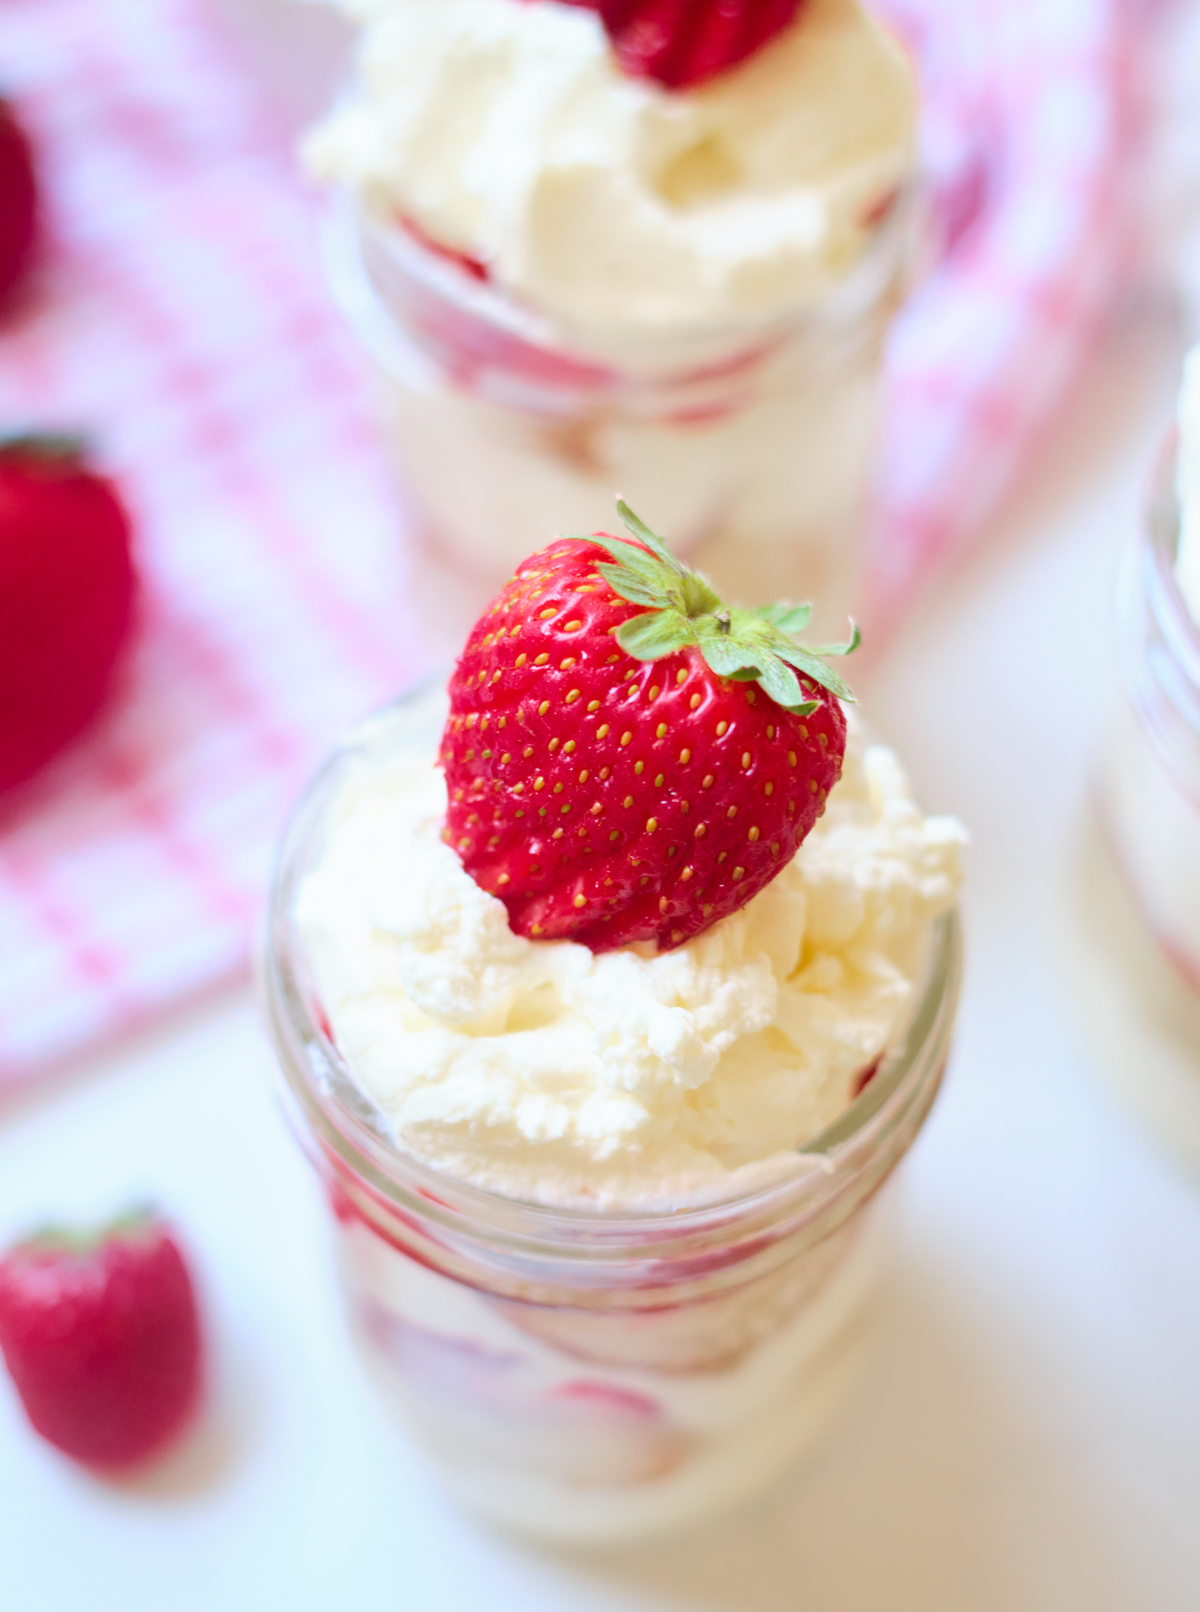 strawberry shortcake in a jar